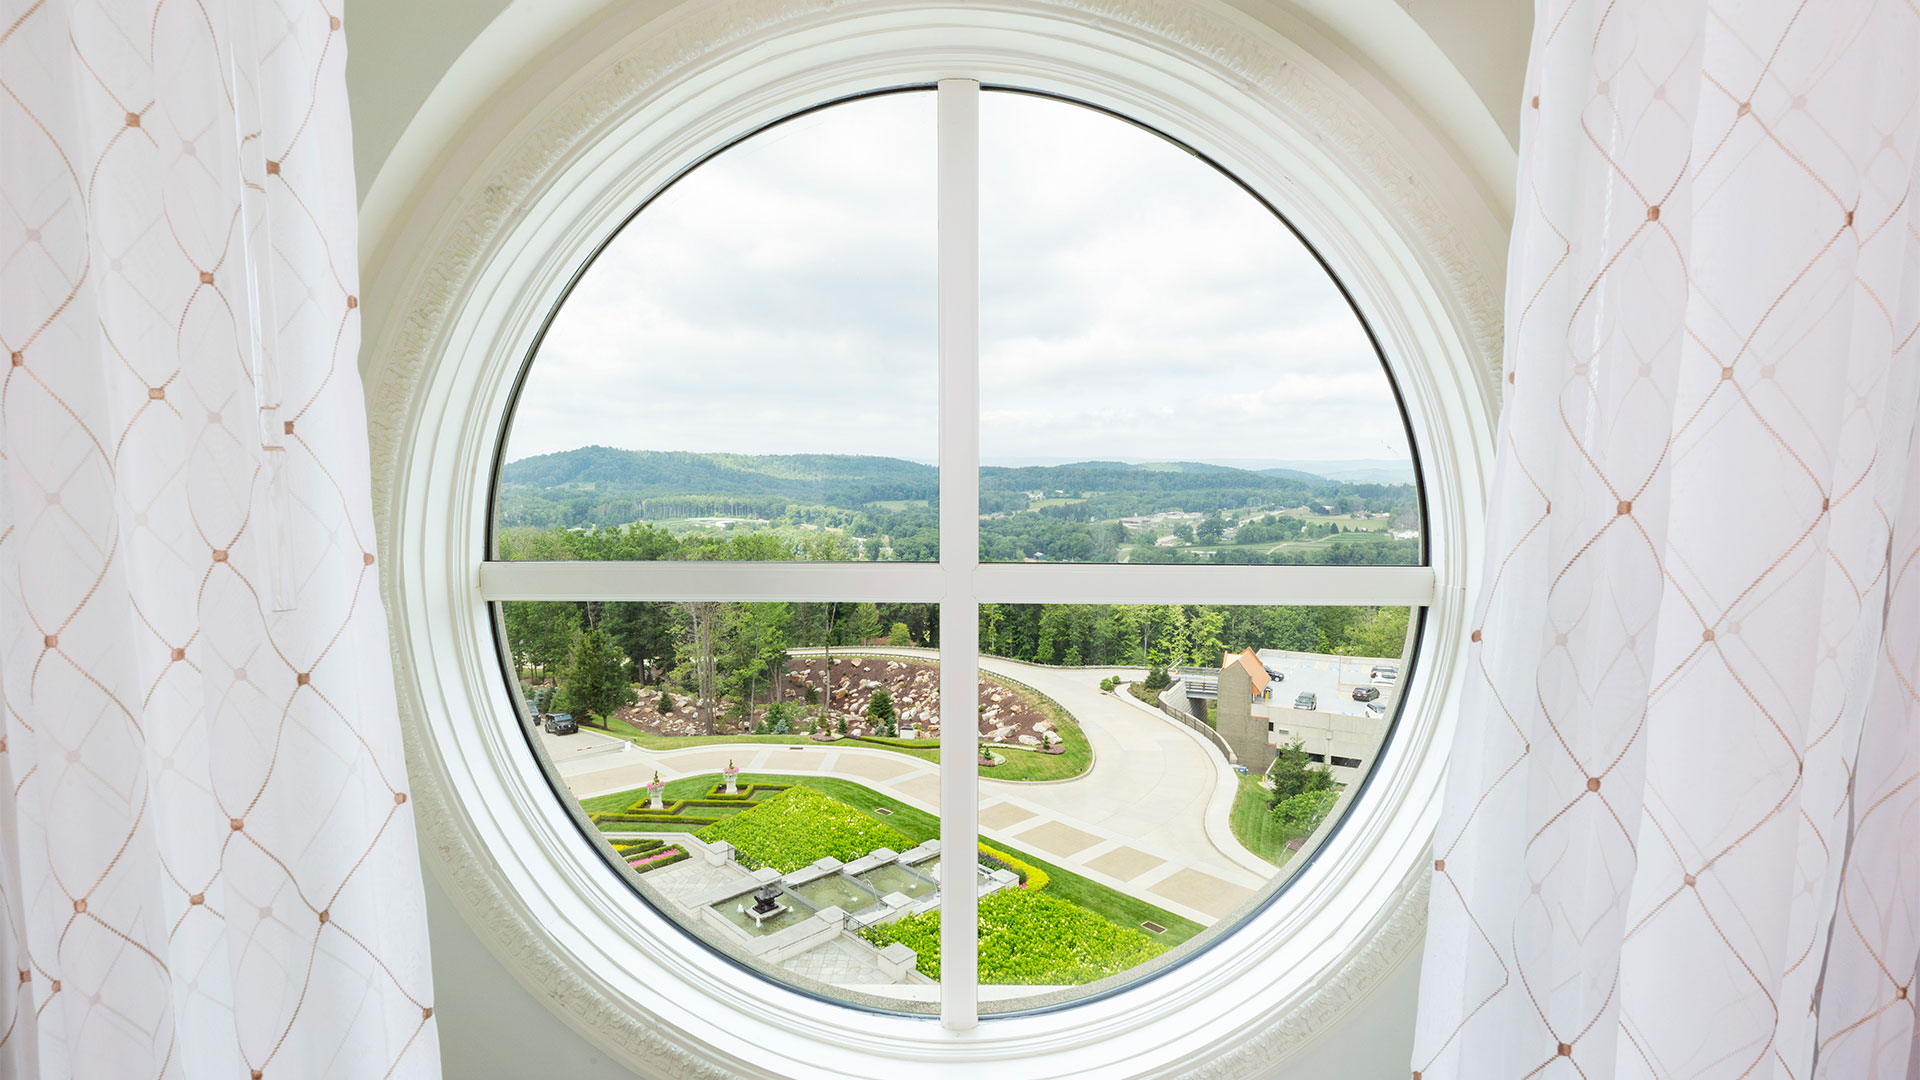 circular window overlooking the resort grounds